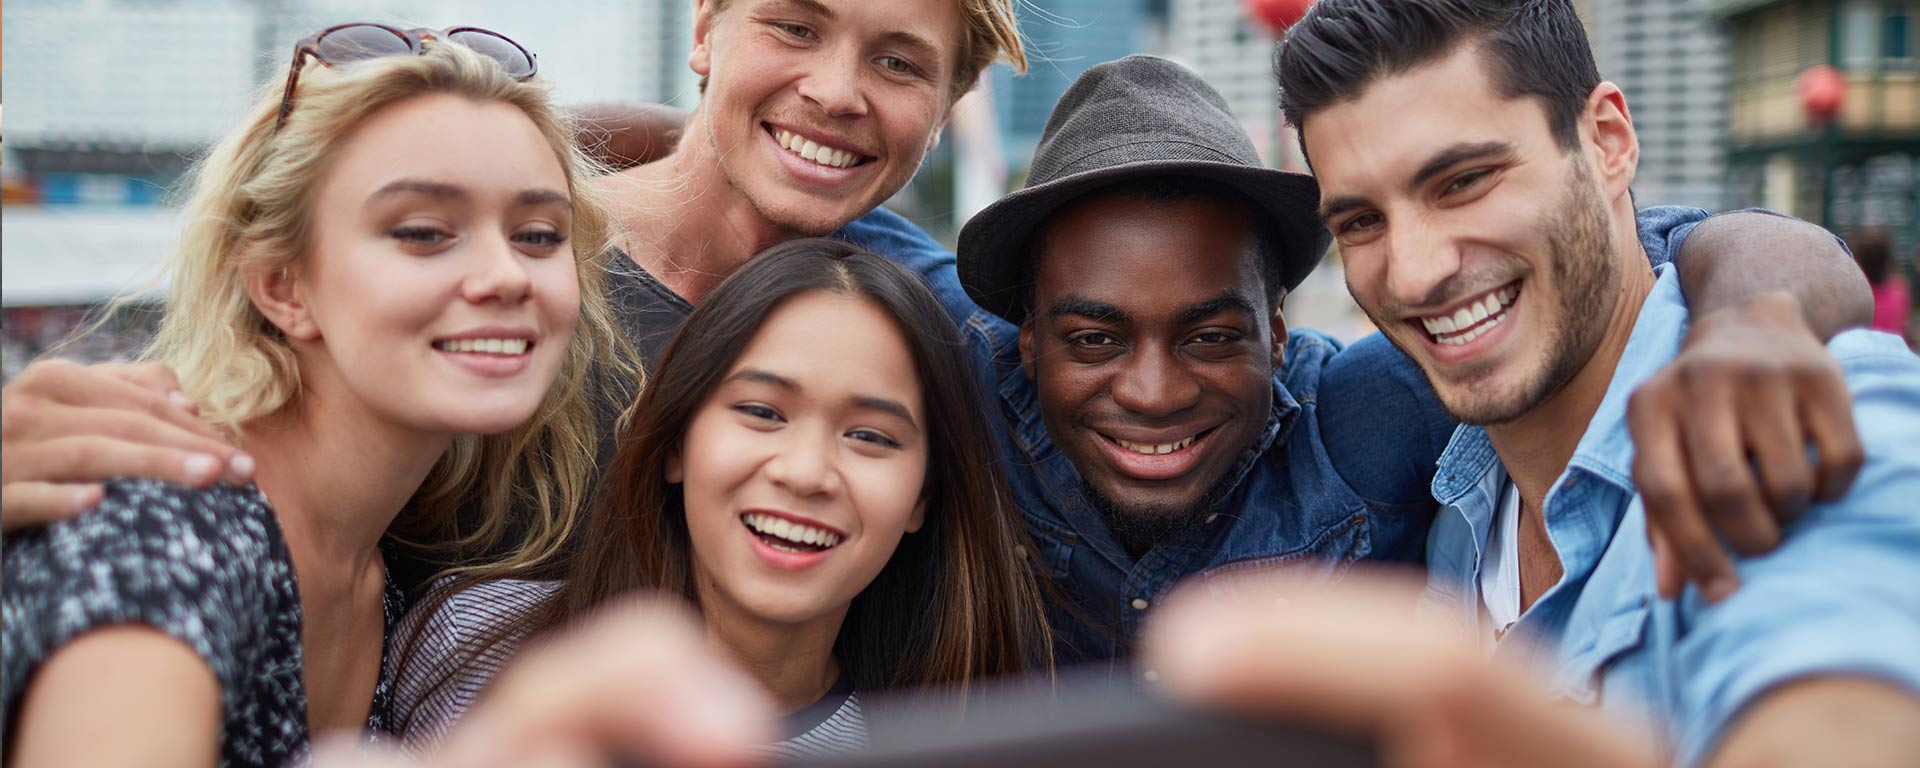 Millennials taking a selfie 